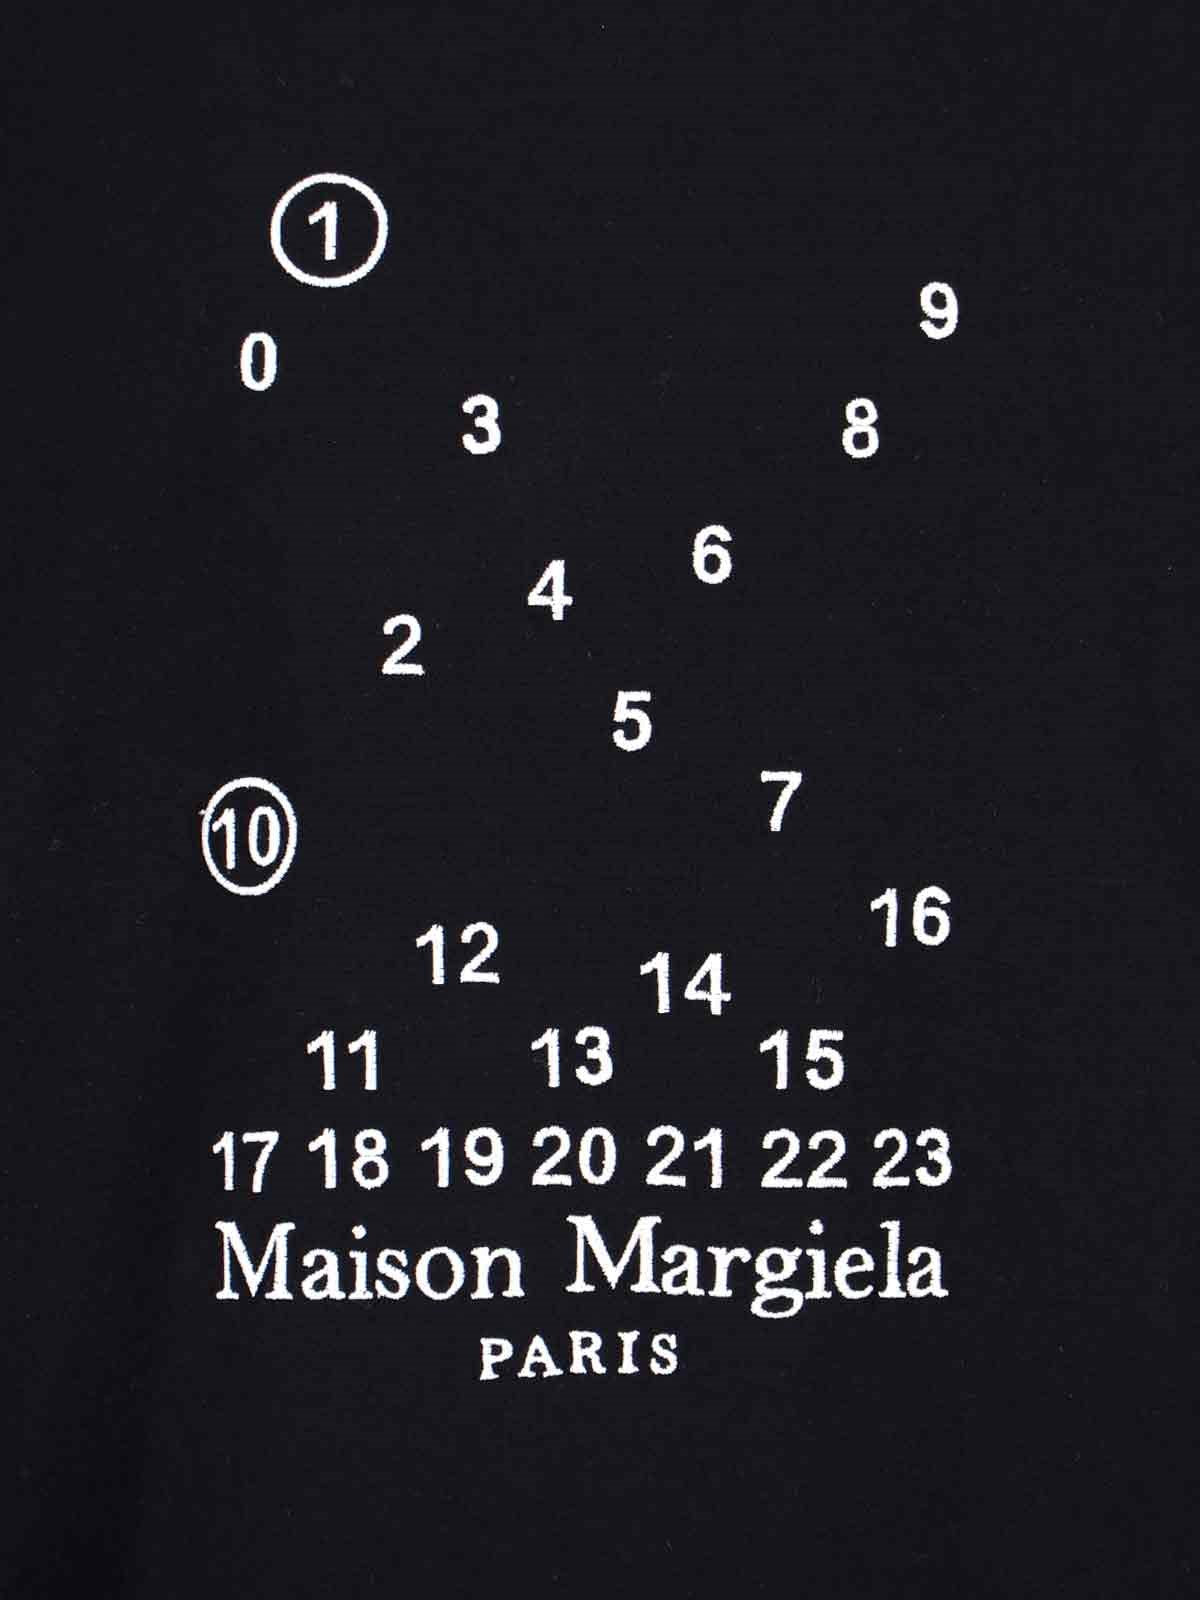 Maison Margiela T-Shirt "numeric logo"-t-shirt-Maison Margiela-T-shirt "numeric logo" Maison Margiela, in cotone nero, girocollo, maniche corte, stampa "numeric logo" bianca fronte, dettaglio "four stitches" retro, orlo dritto.-Dresso